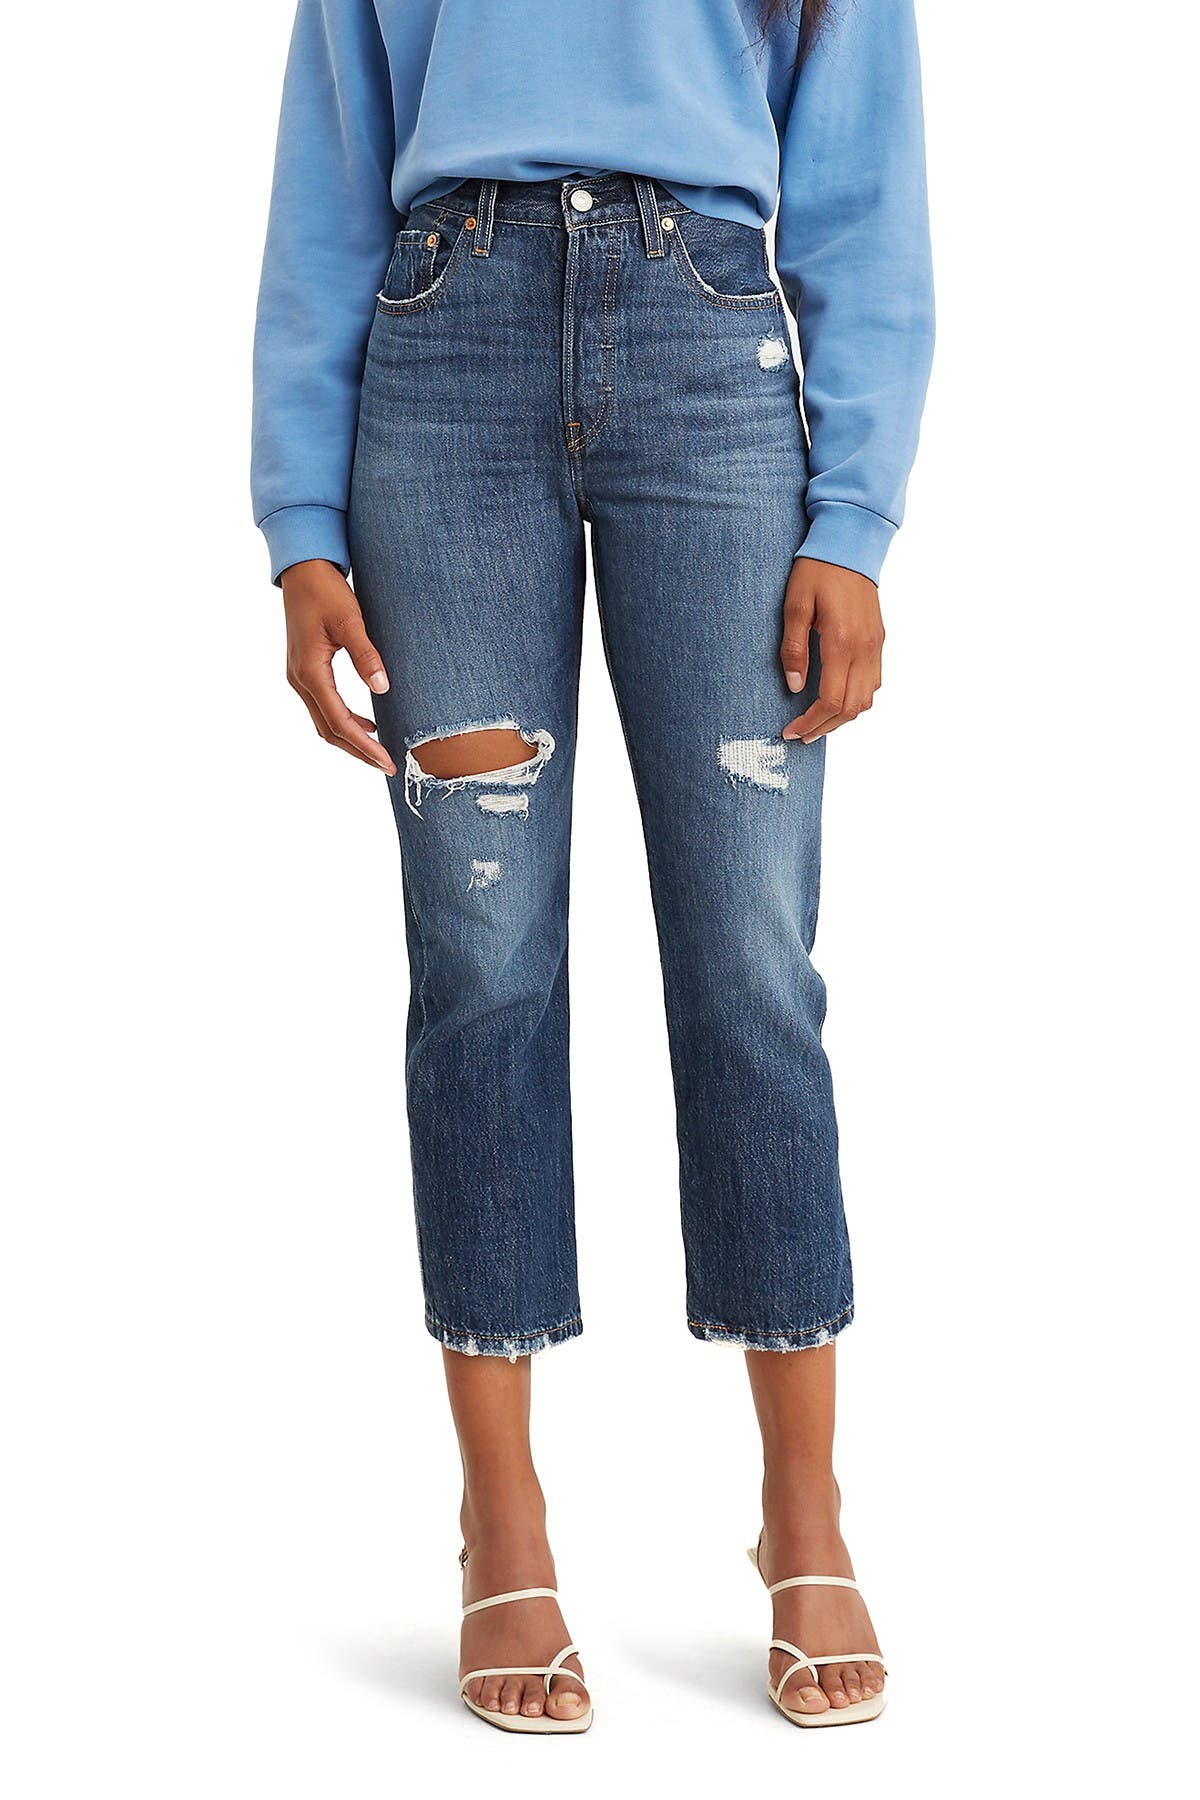 levi's crop jeans